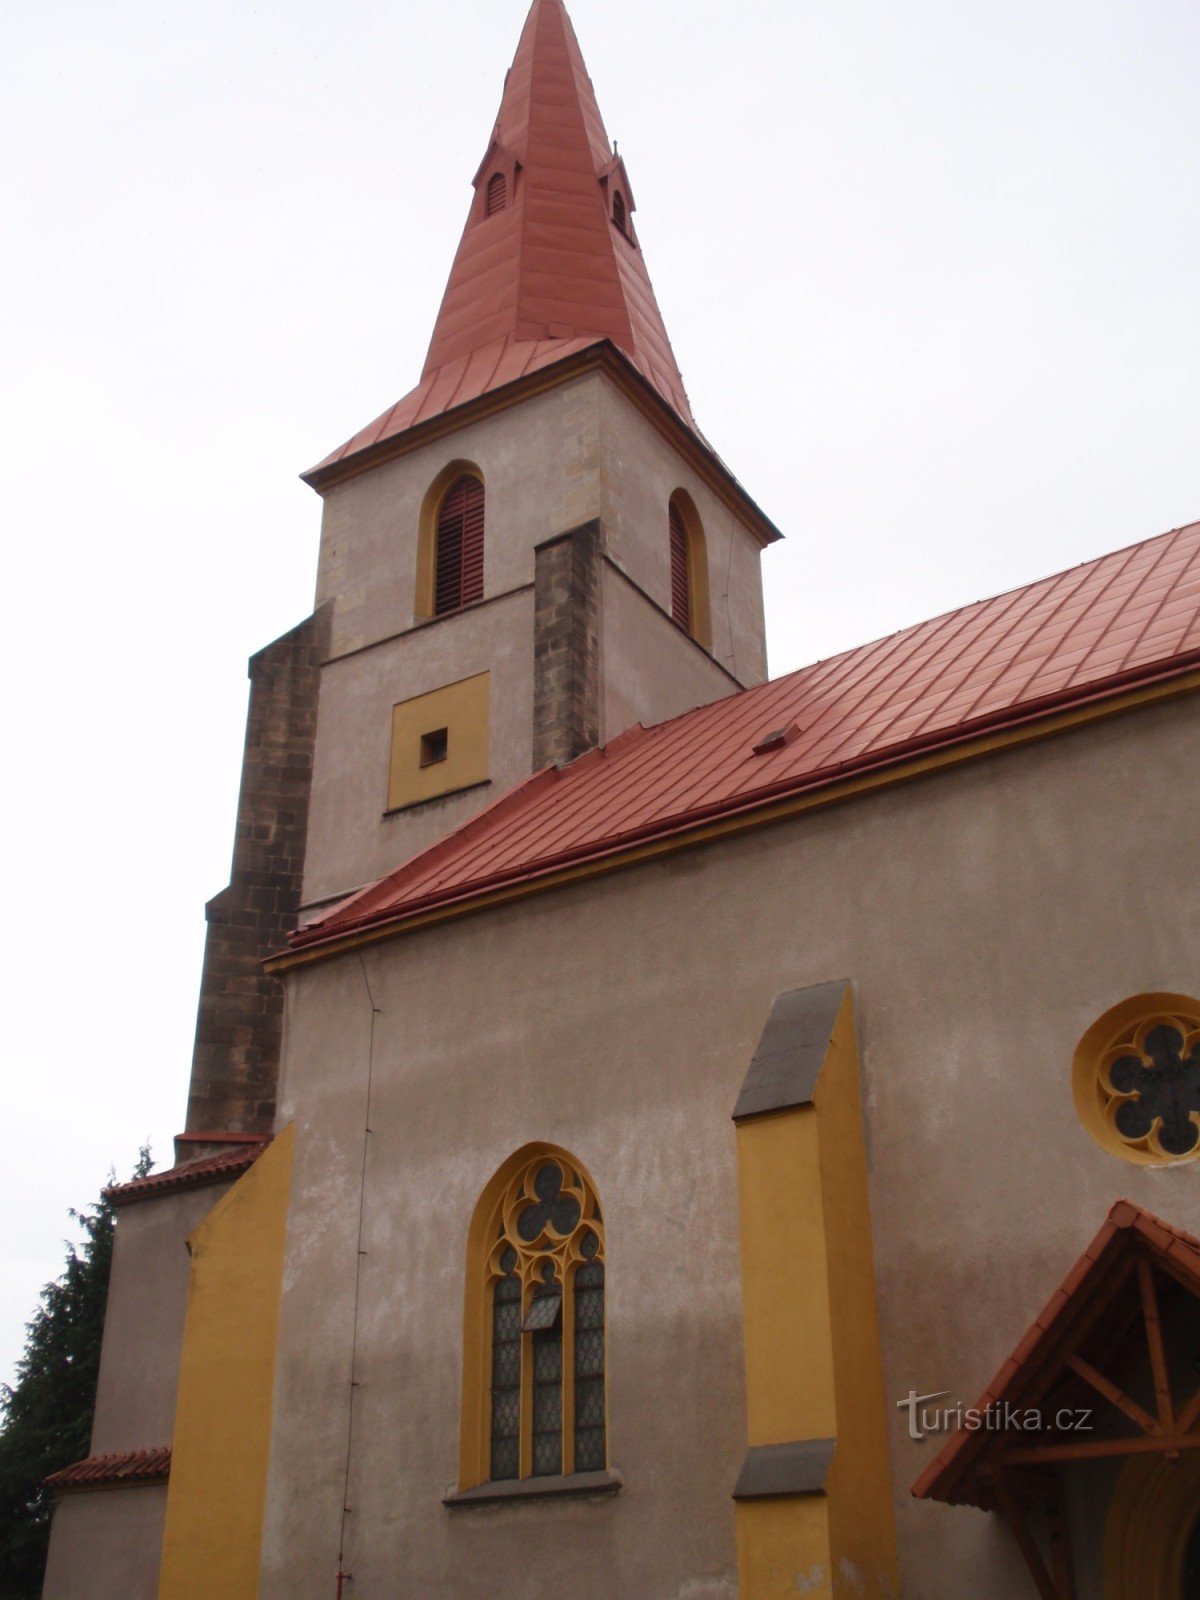 Church monuments of the city of Chotěboře